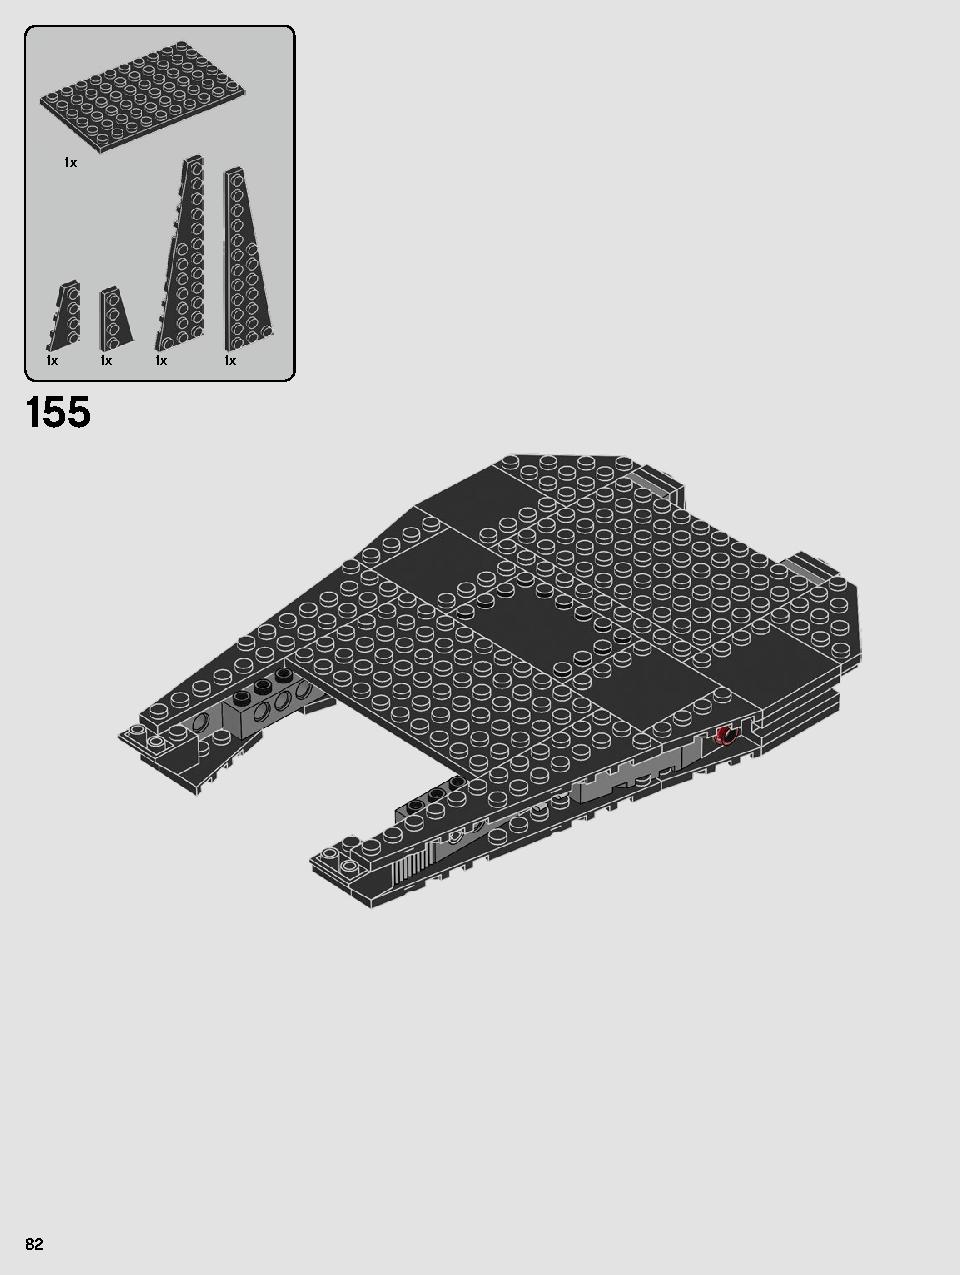 스타워즈 카일로 렌의 셔틀™ 75256 레고 세트 제품정보 레고 조립설명서 82 page